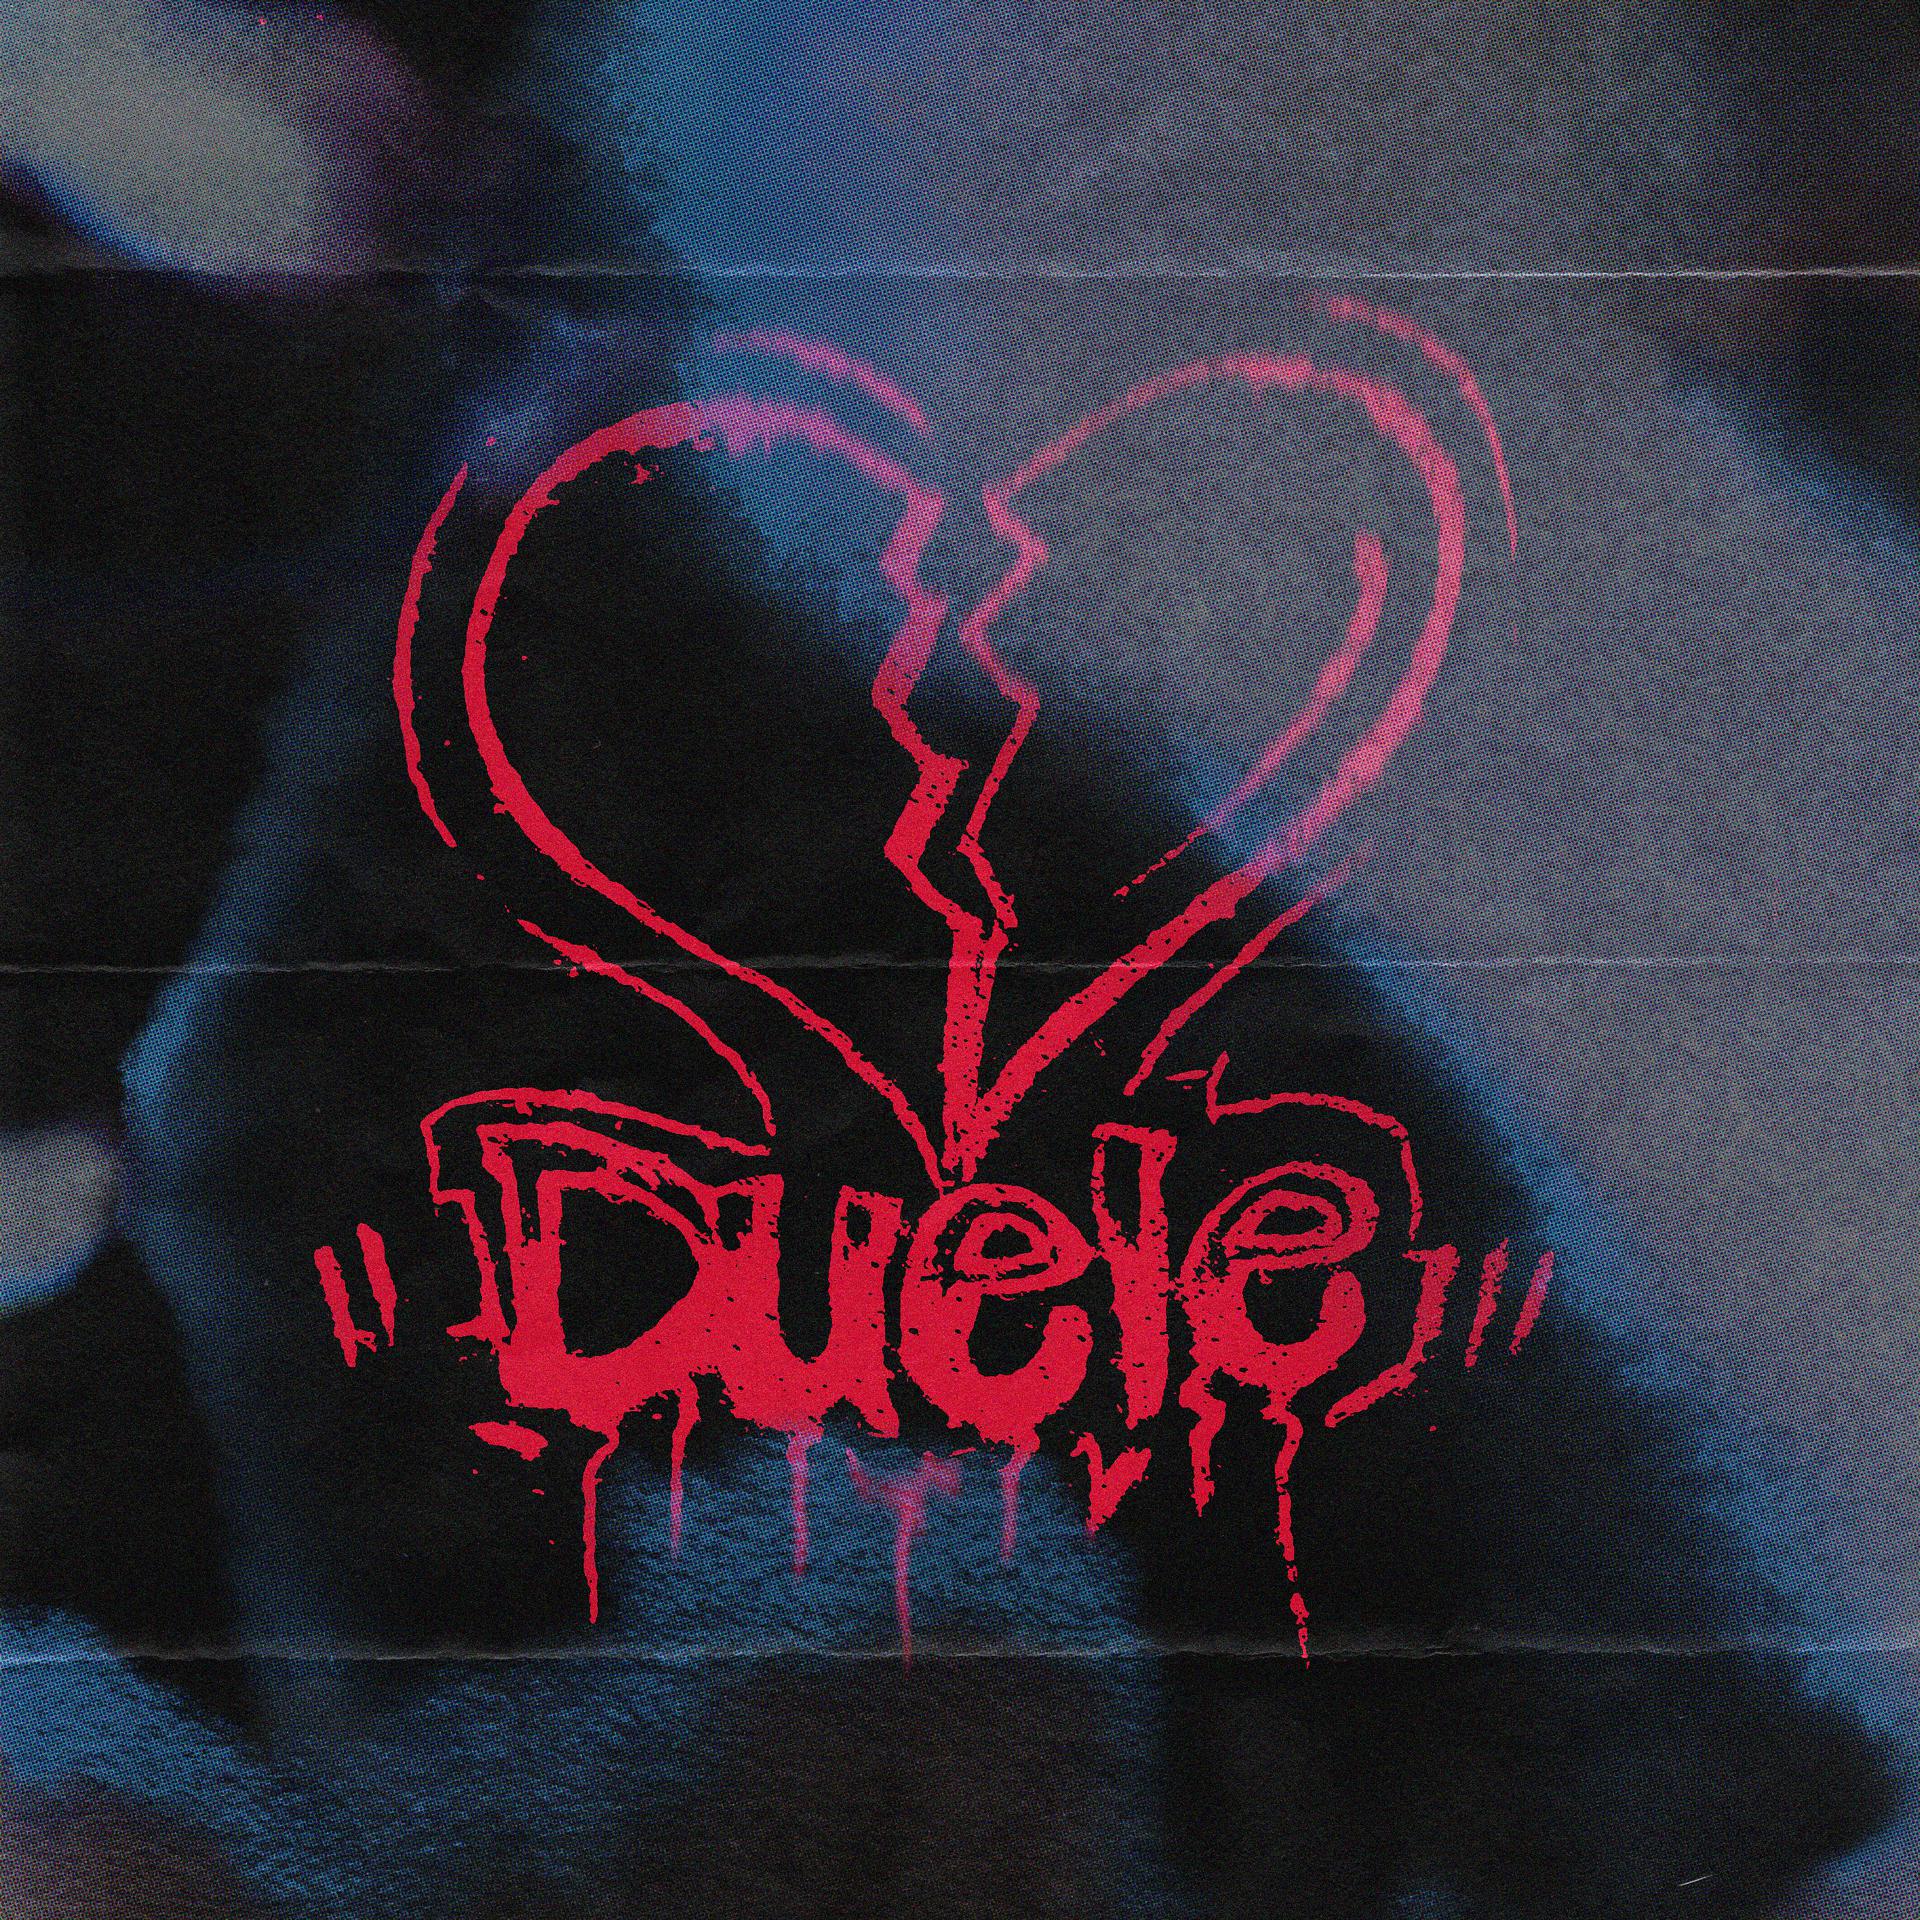 Постер альбома Duele